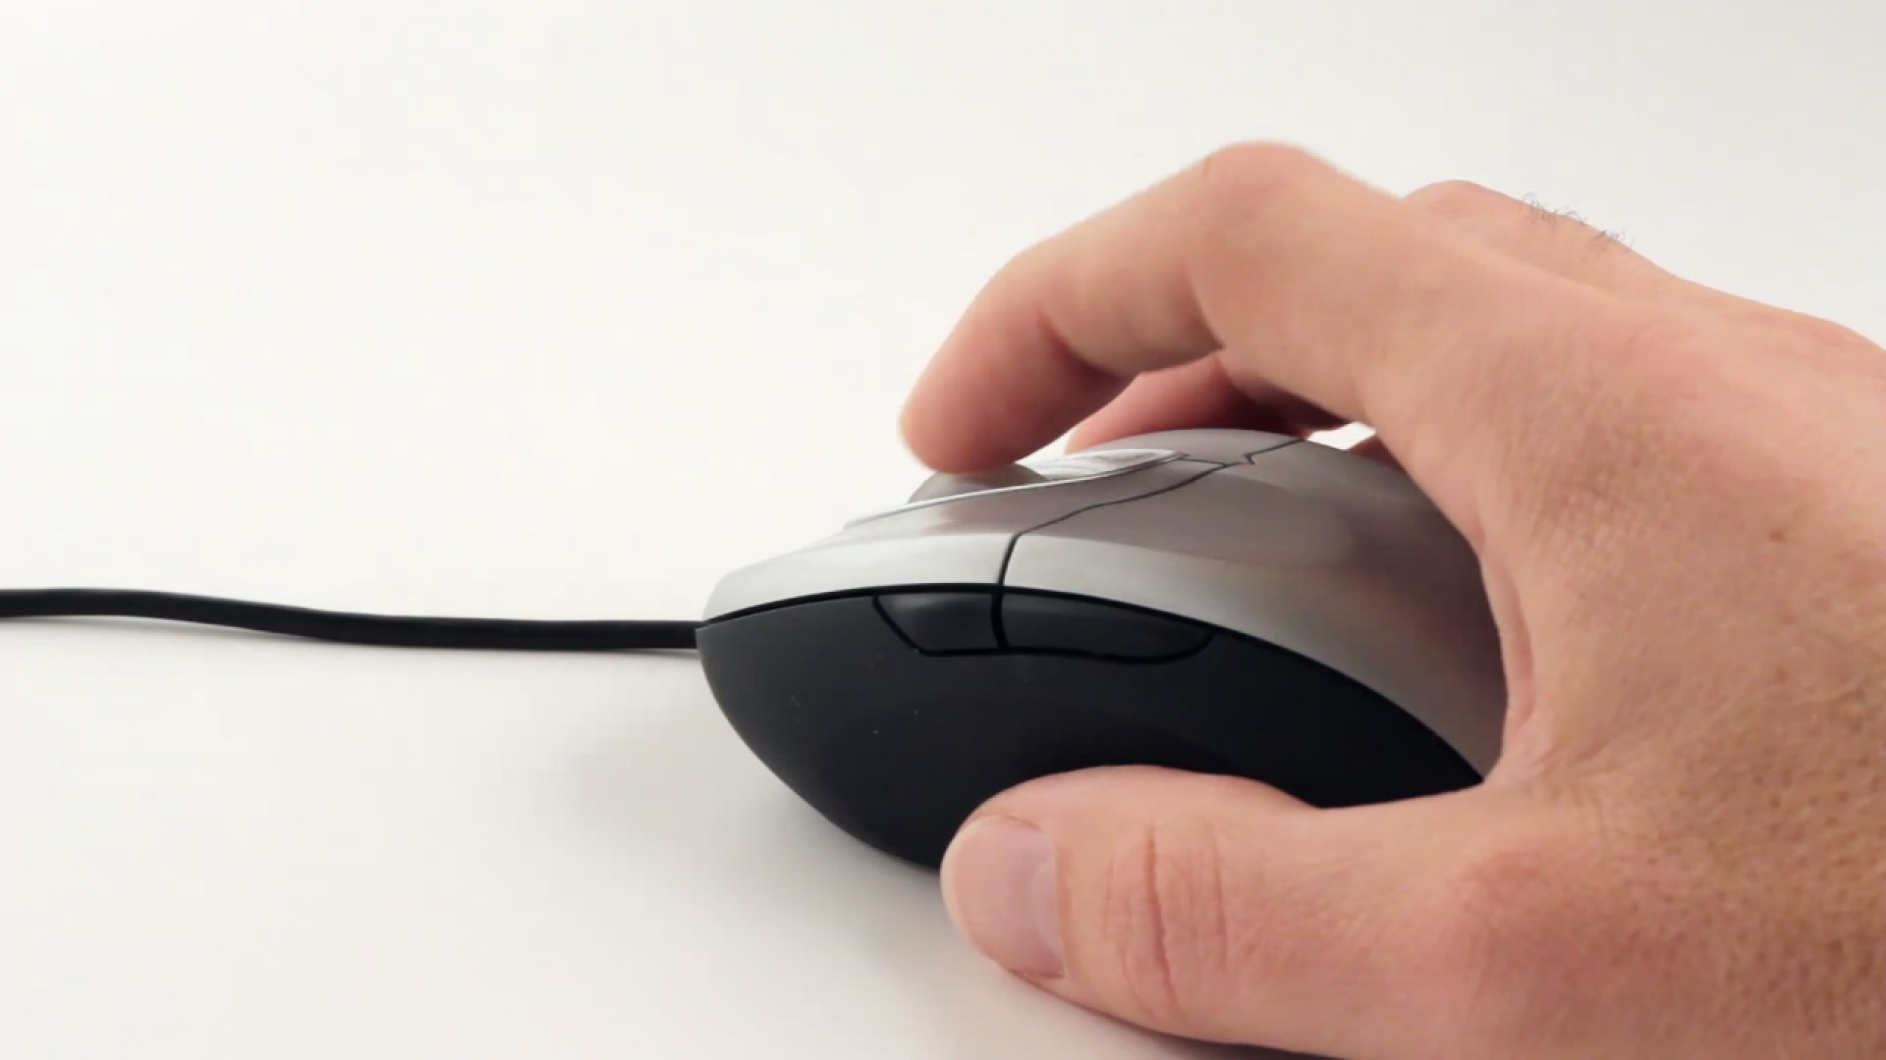 Наведи мышку. Компьютерная мышка в руке. Рука на мышке. Нажатие мышки. Мышь для ноутбука на палец.